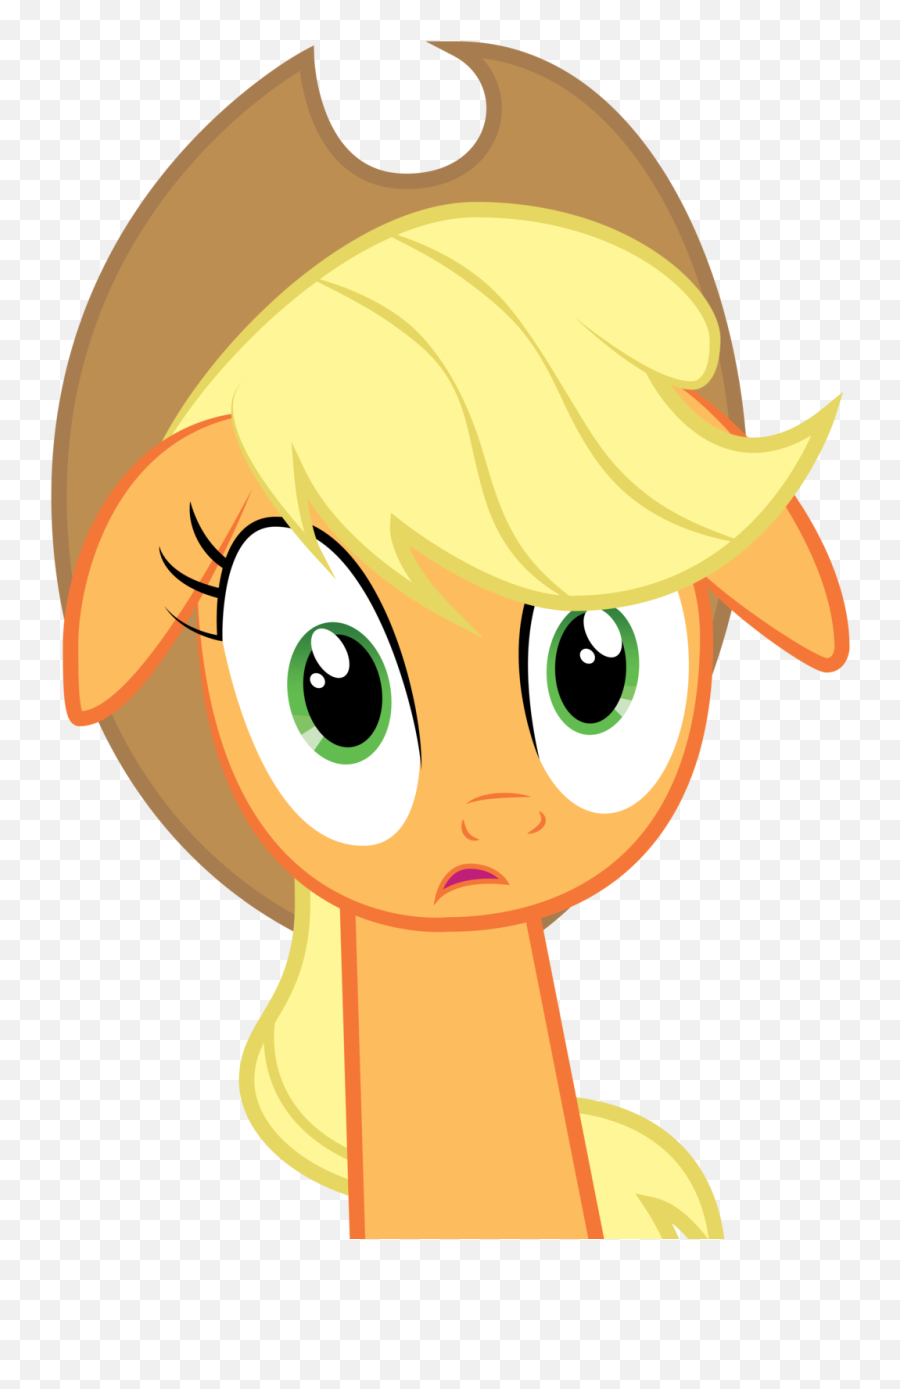 Surprise Clipart Shock Surprise Shock Transparent Free For - My Little Pony Applejack Shocked Emoji,Shocked Emotion